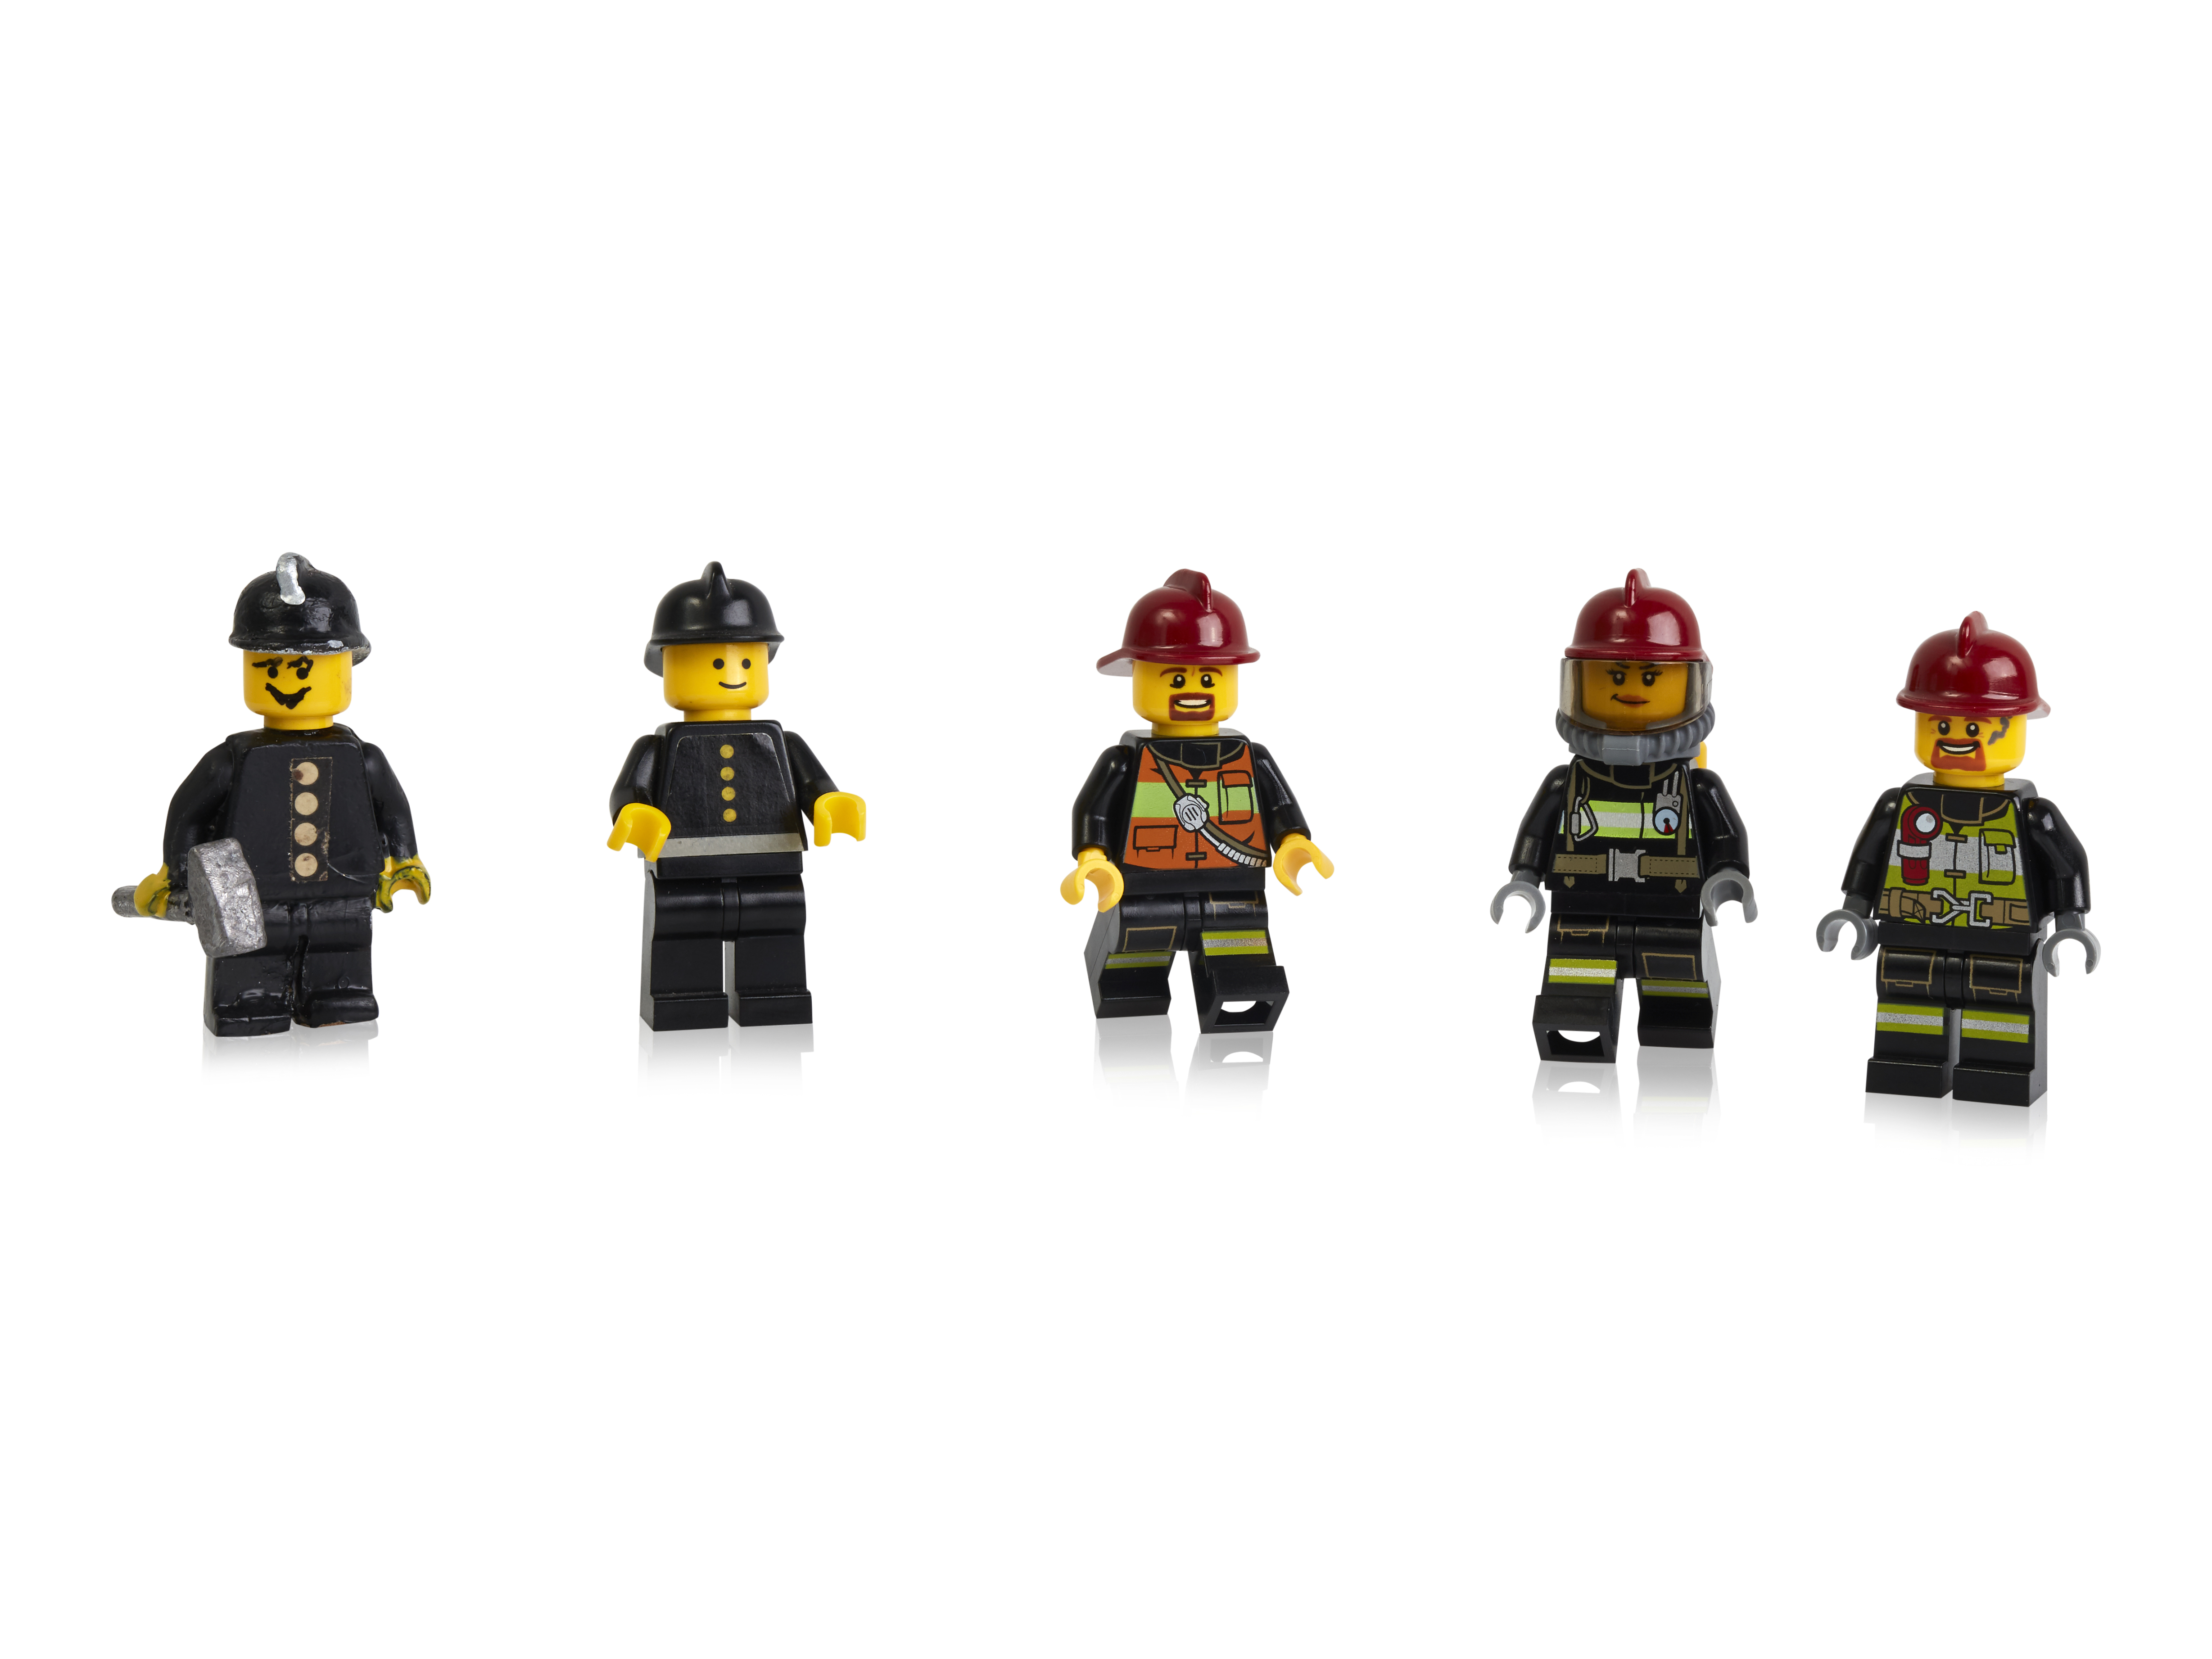 Early prototypes first and more recent minifigure firefighters 40-lecie minifigurek LEGO: jak zmieniały się na przestrzeni lat?